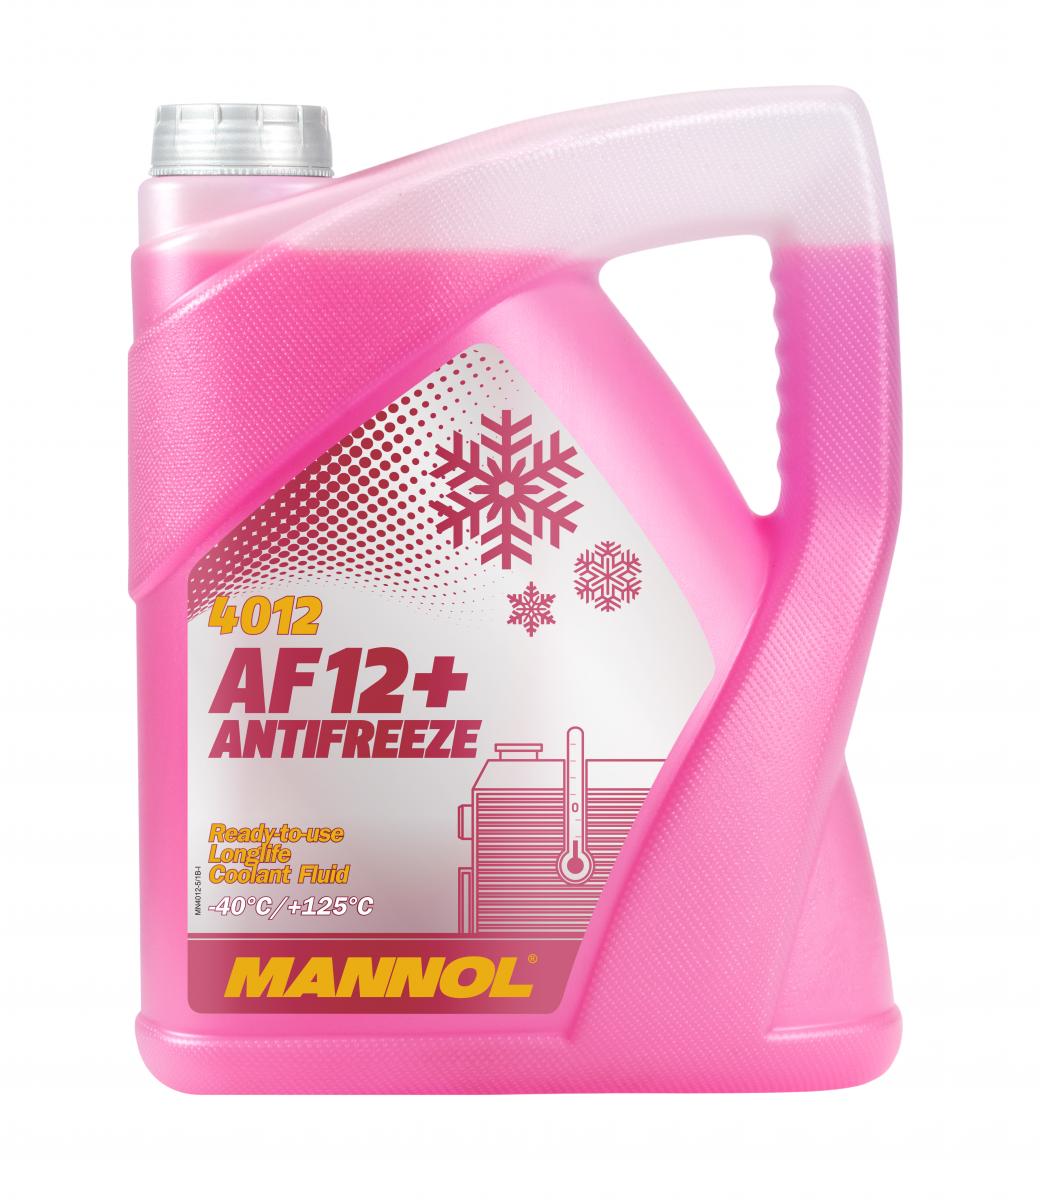 10 Liter (2x5) MANNOL Antifreeze AF12+ Frostschutz Fertiggemisch rot -40°C G12+